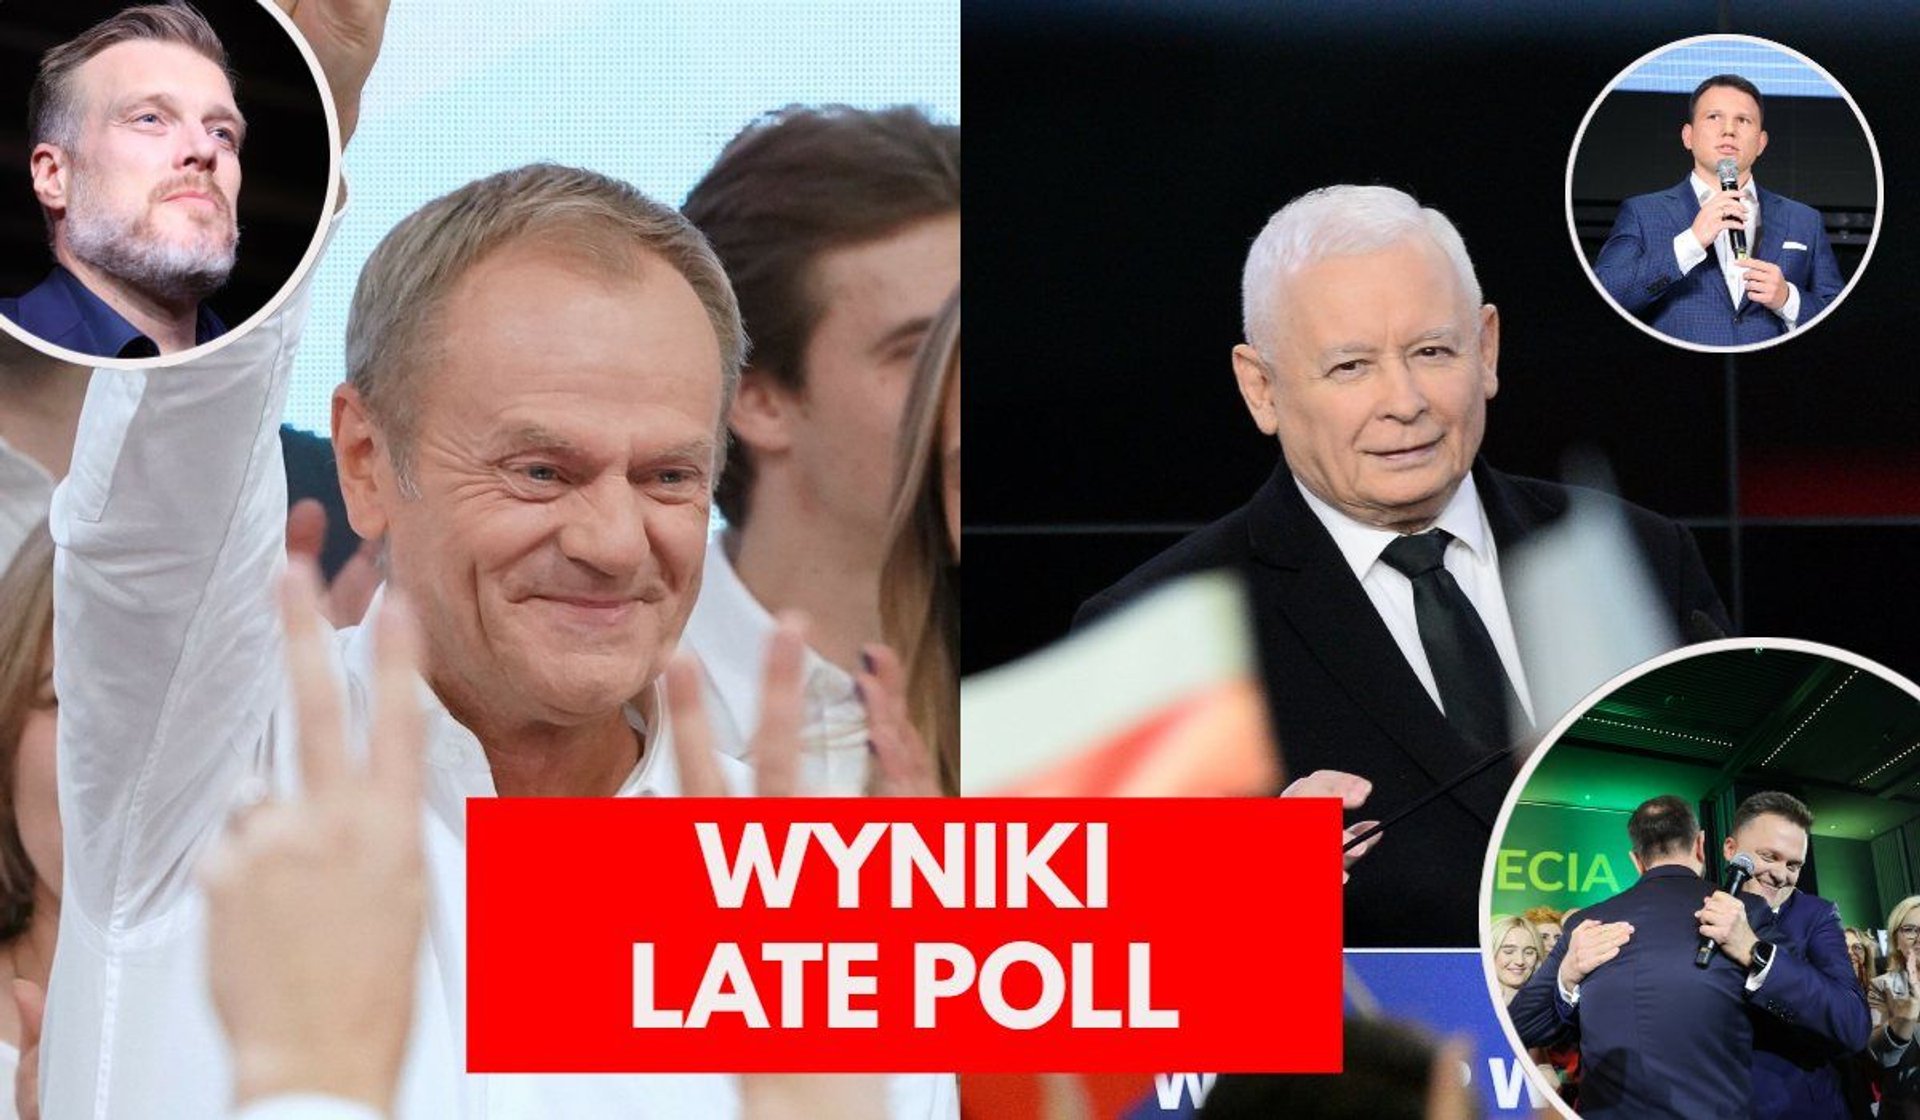 Donald Tusk, Jarosław Kaczyński, Adrian Zandberg, Sławomir Mentzen, Szymon Hołownia